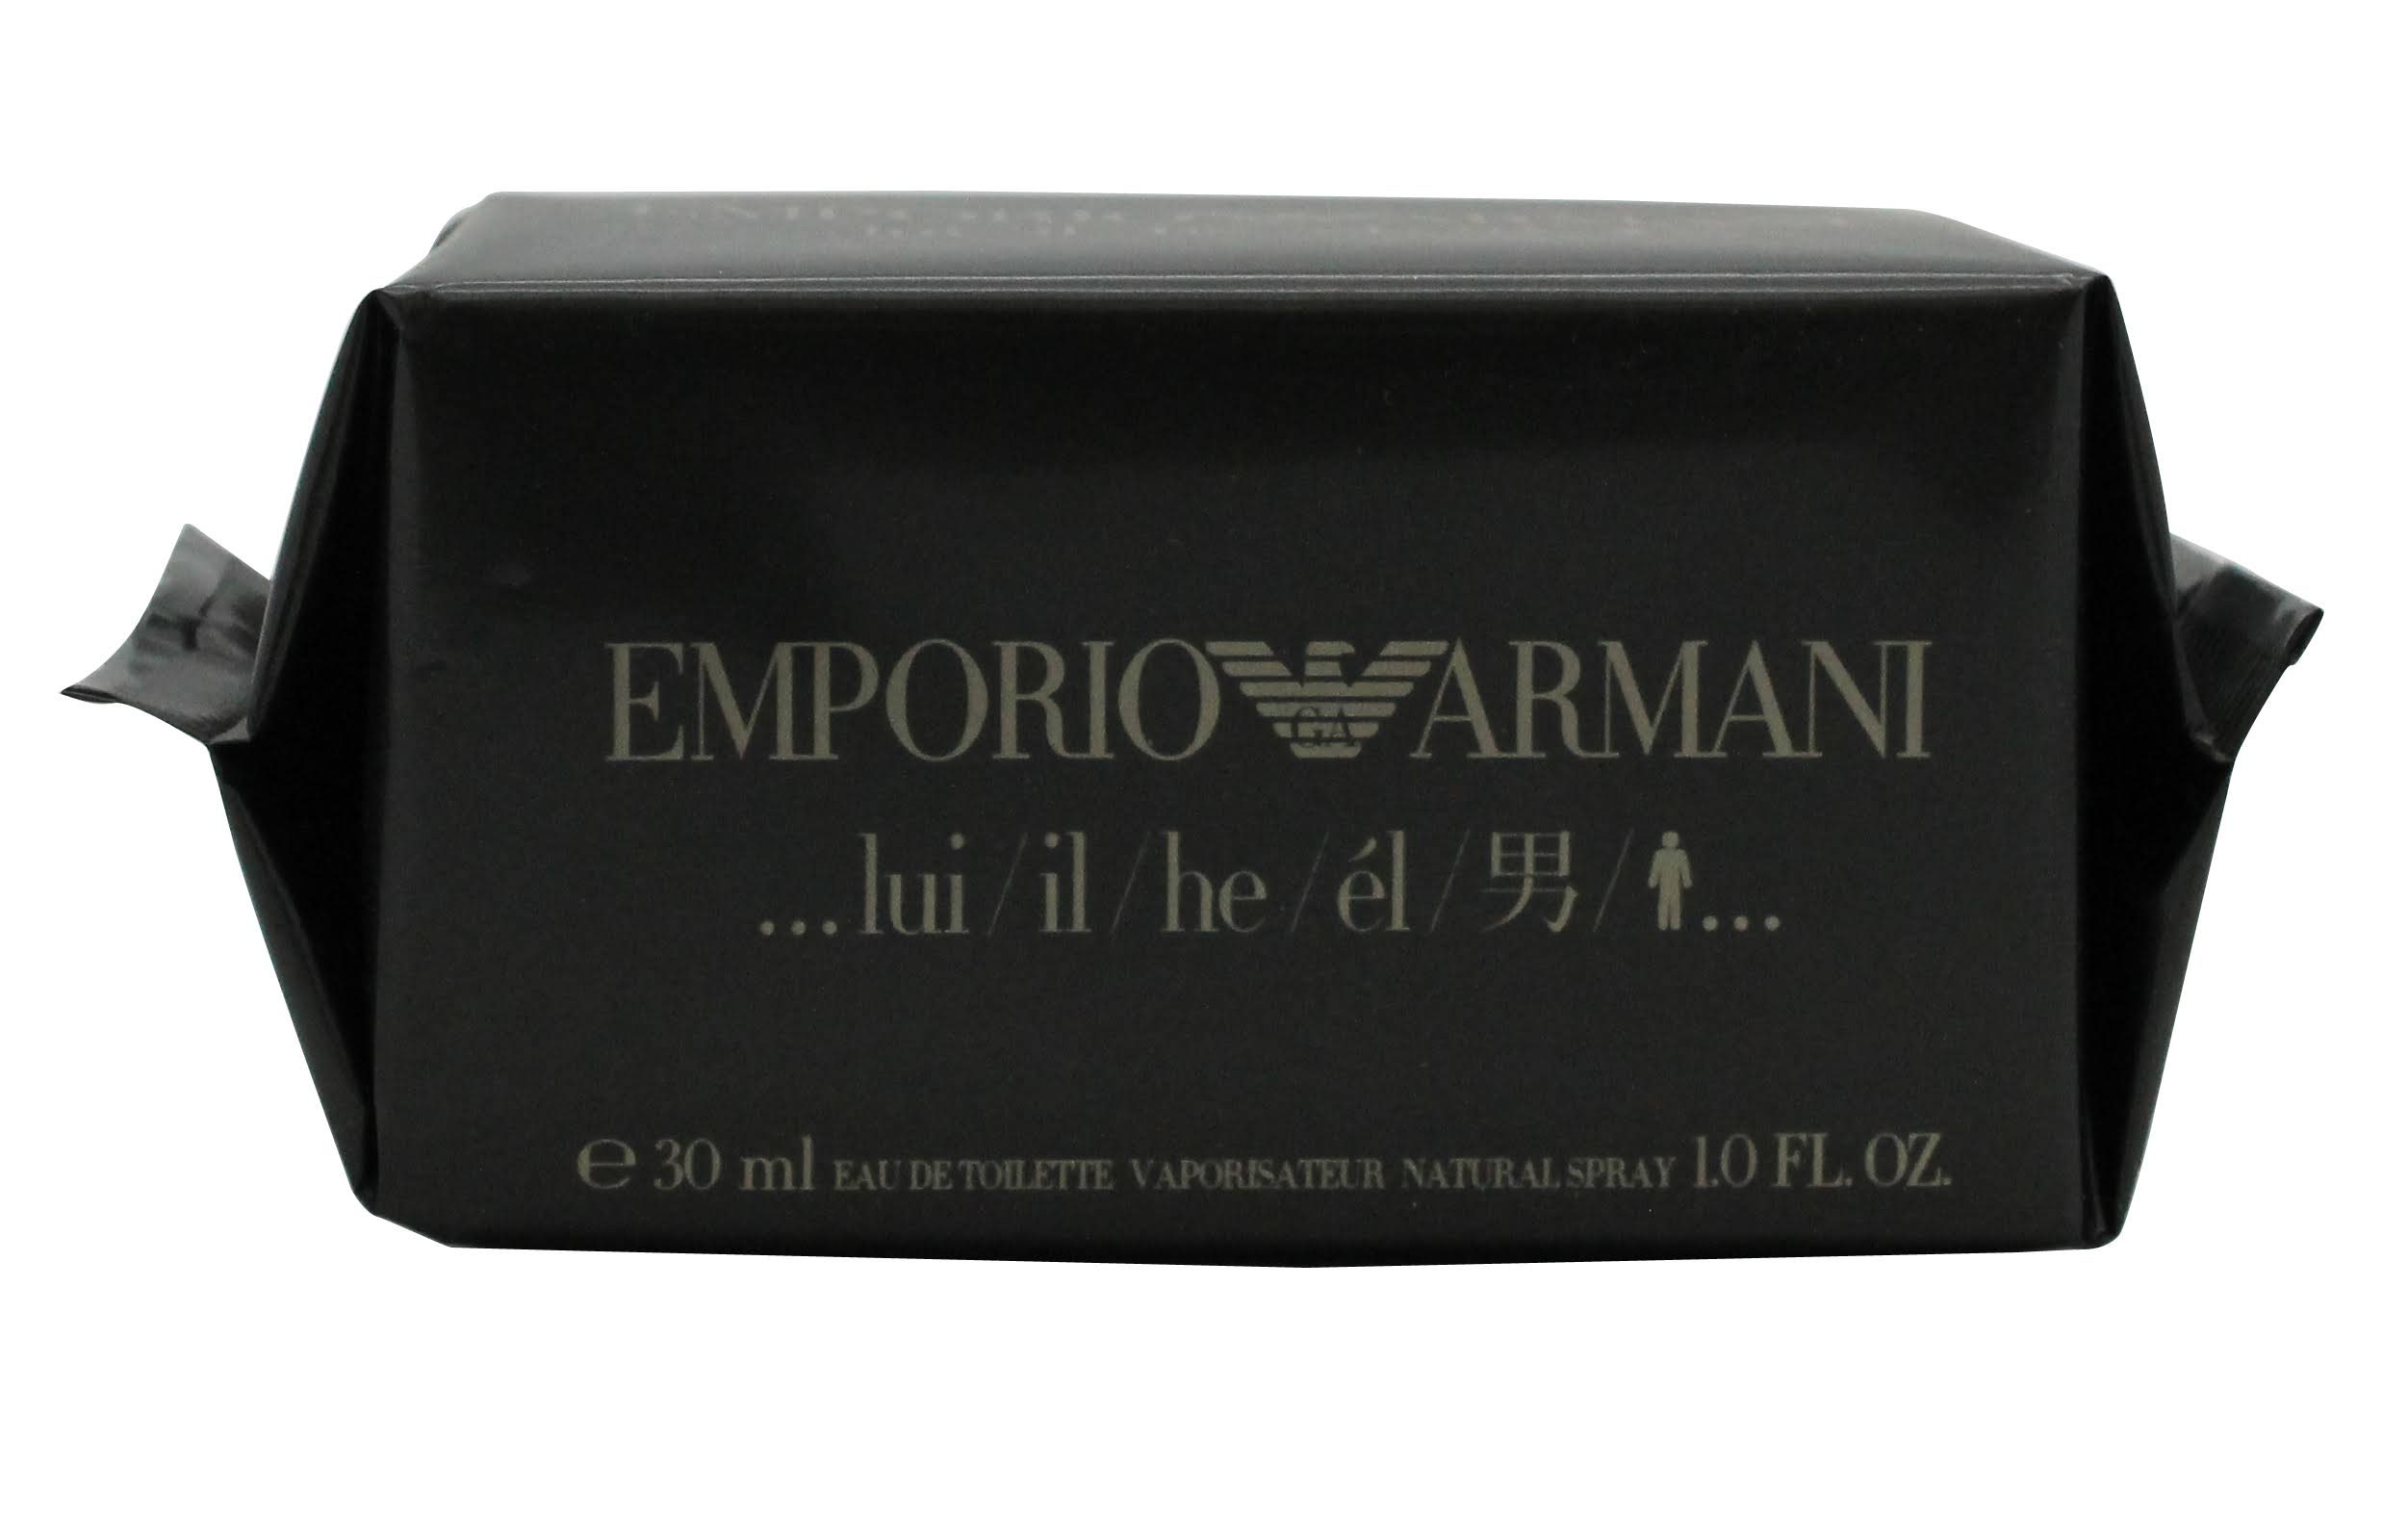 EMPORIO ARMANI HE, EL, LUI EDT 30 ML